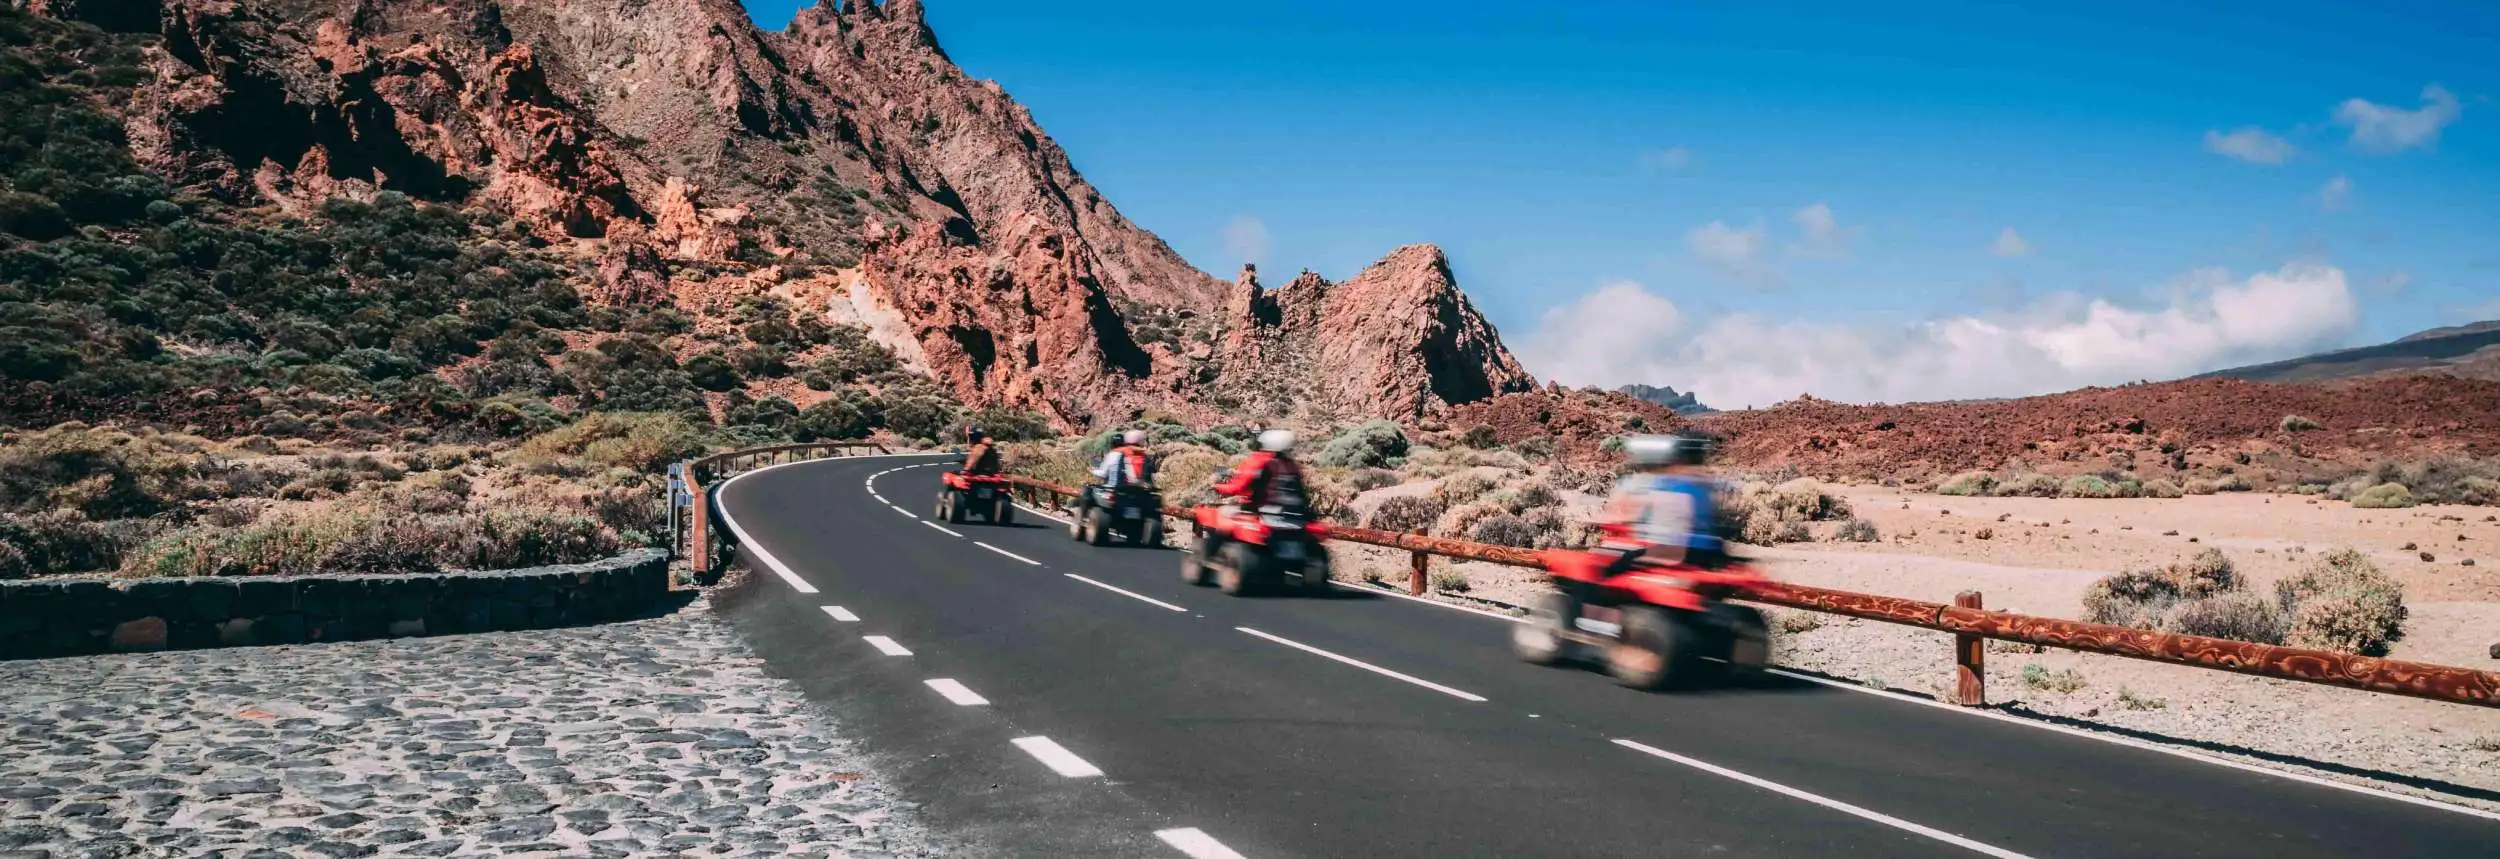 Quad biking Tenerife Tour Excursion